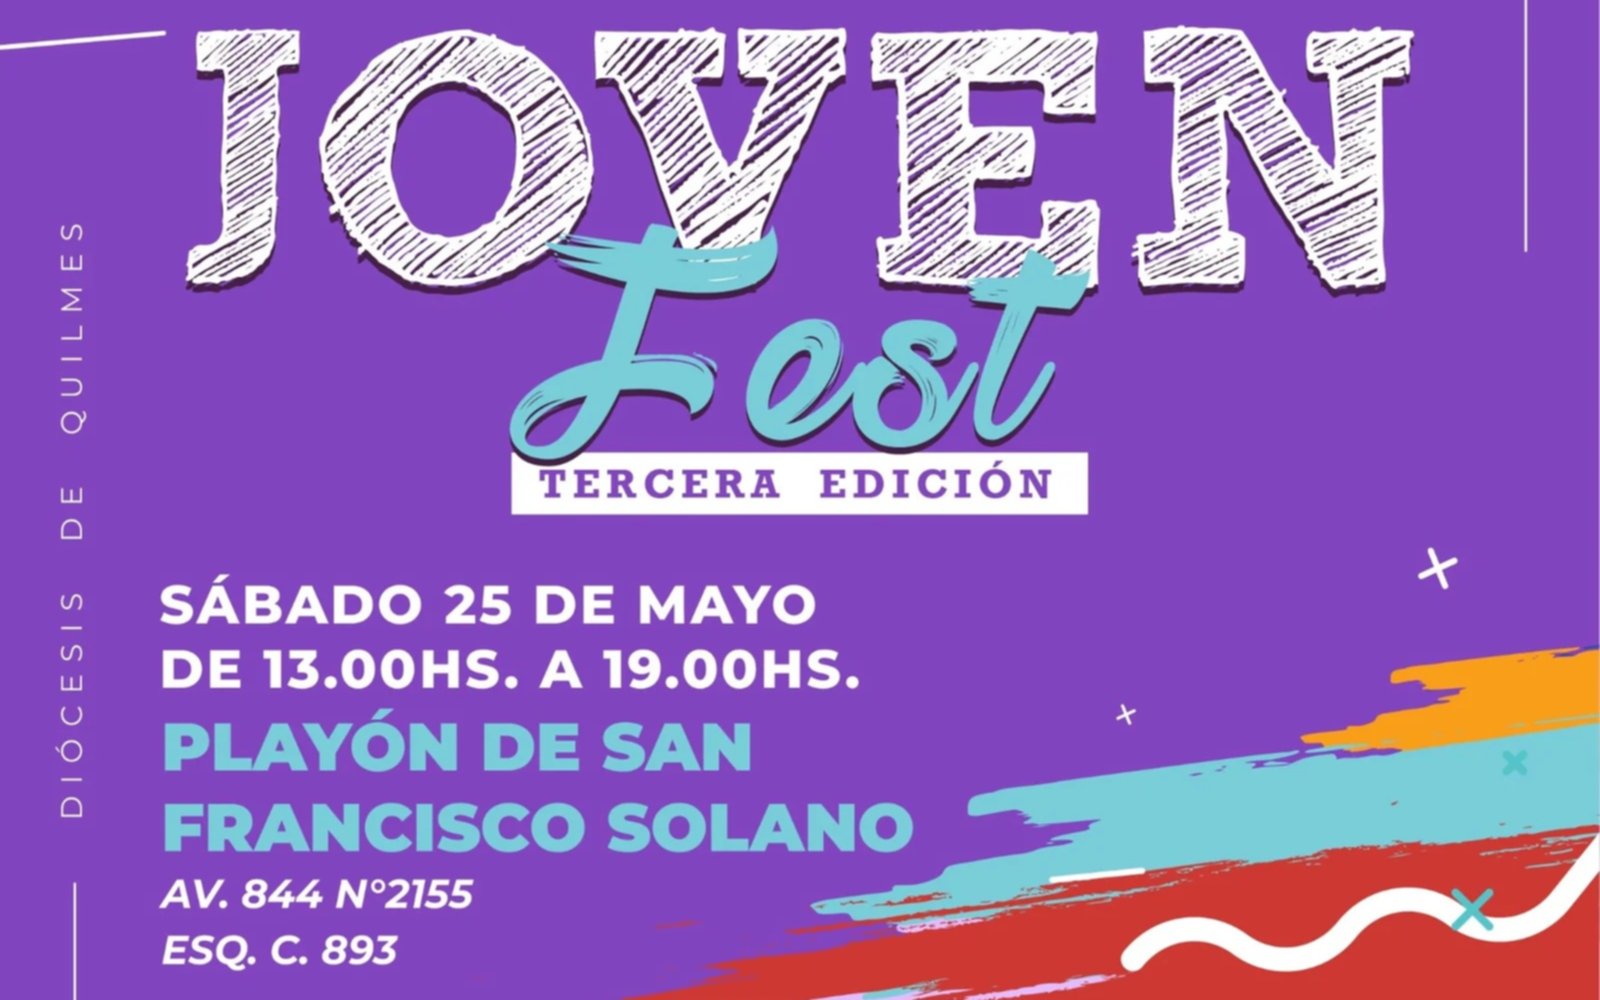 El festival "JovenFest" de la Diócesis Quilmes llega a San Francisco Solano